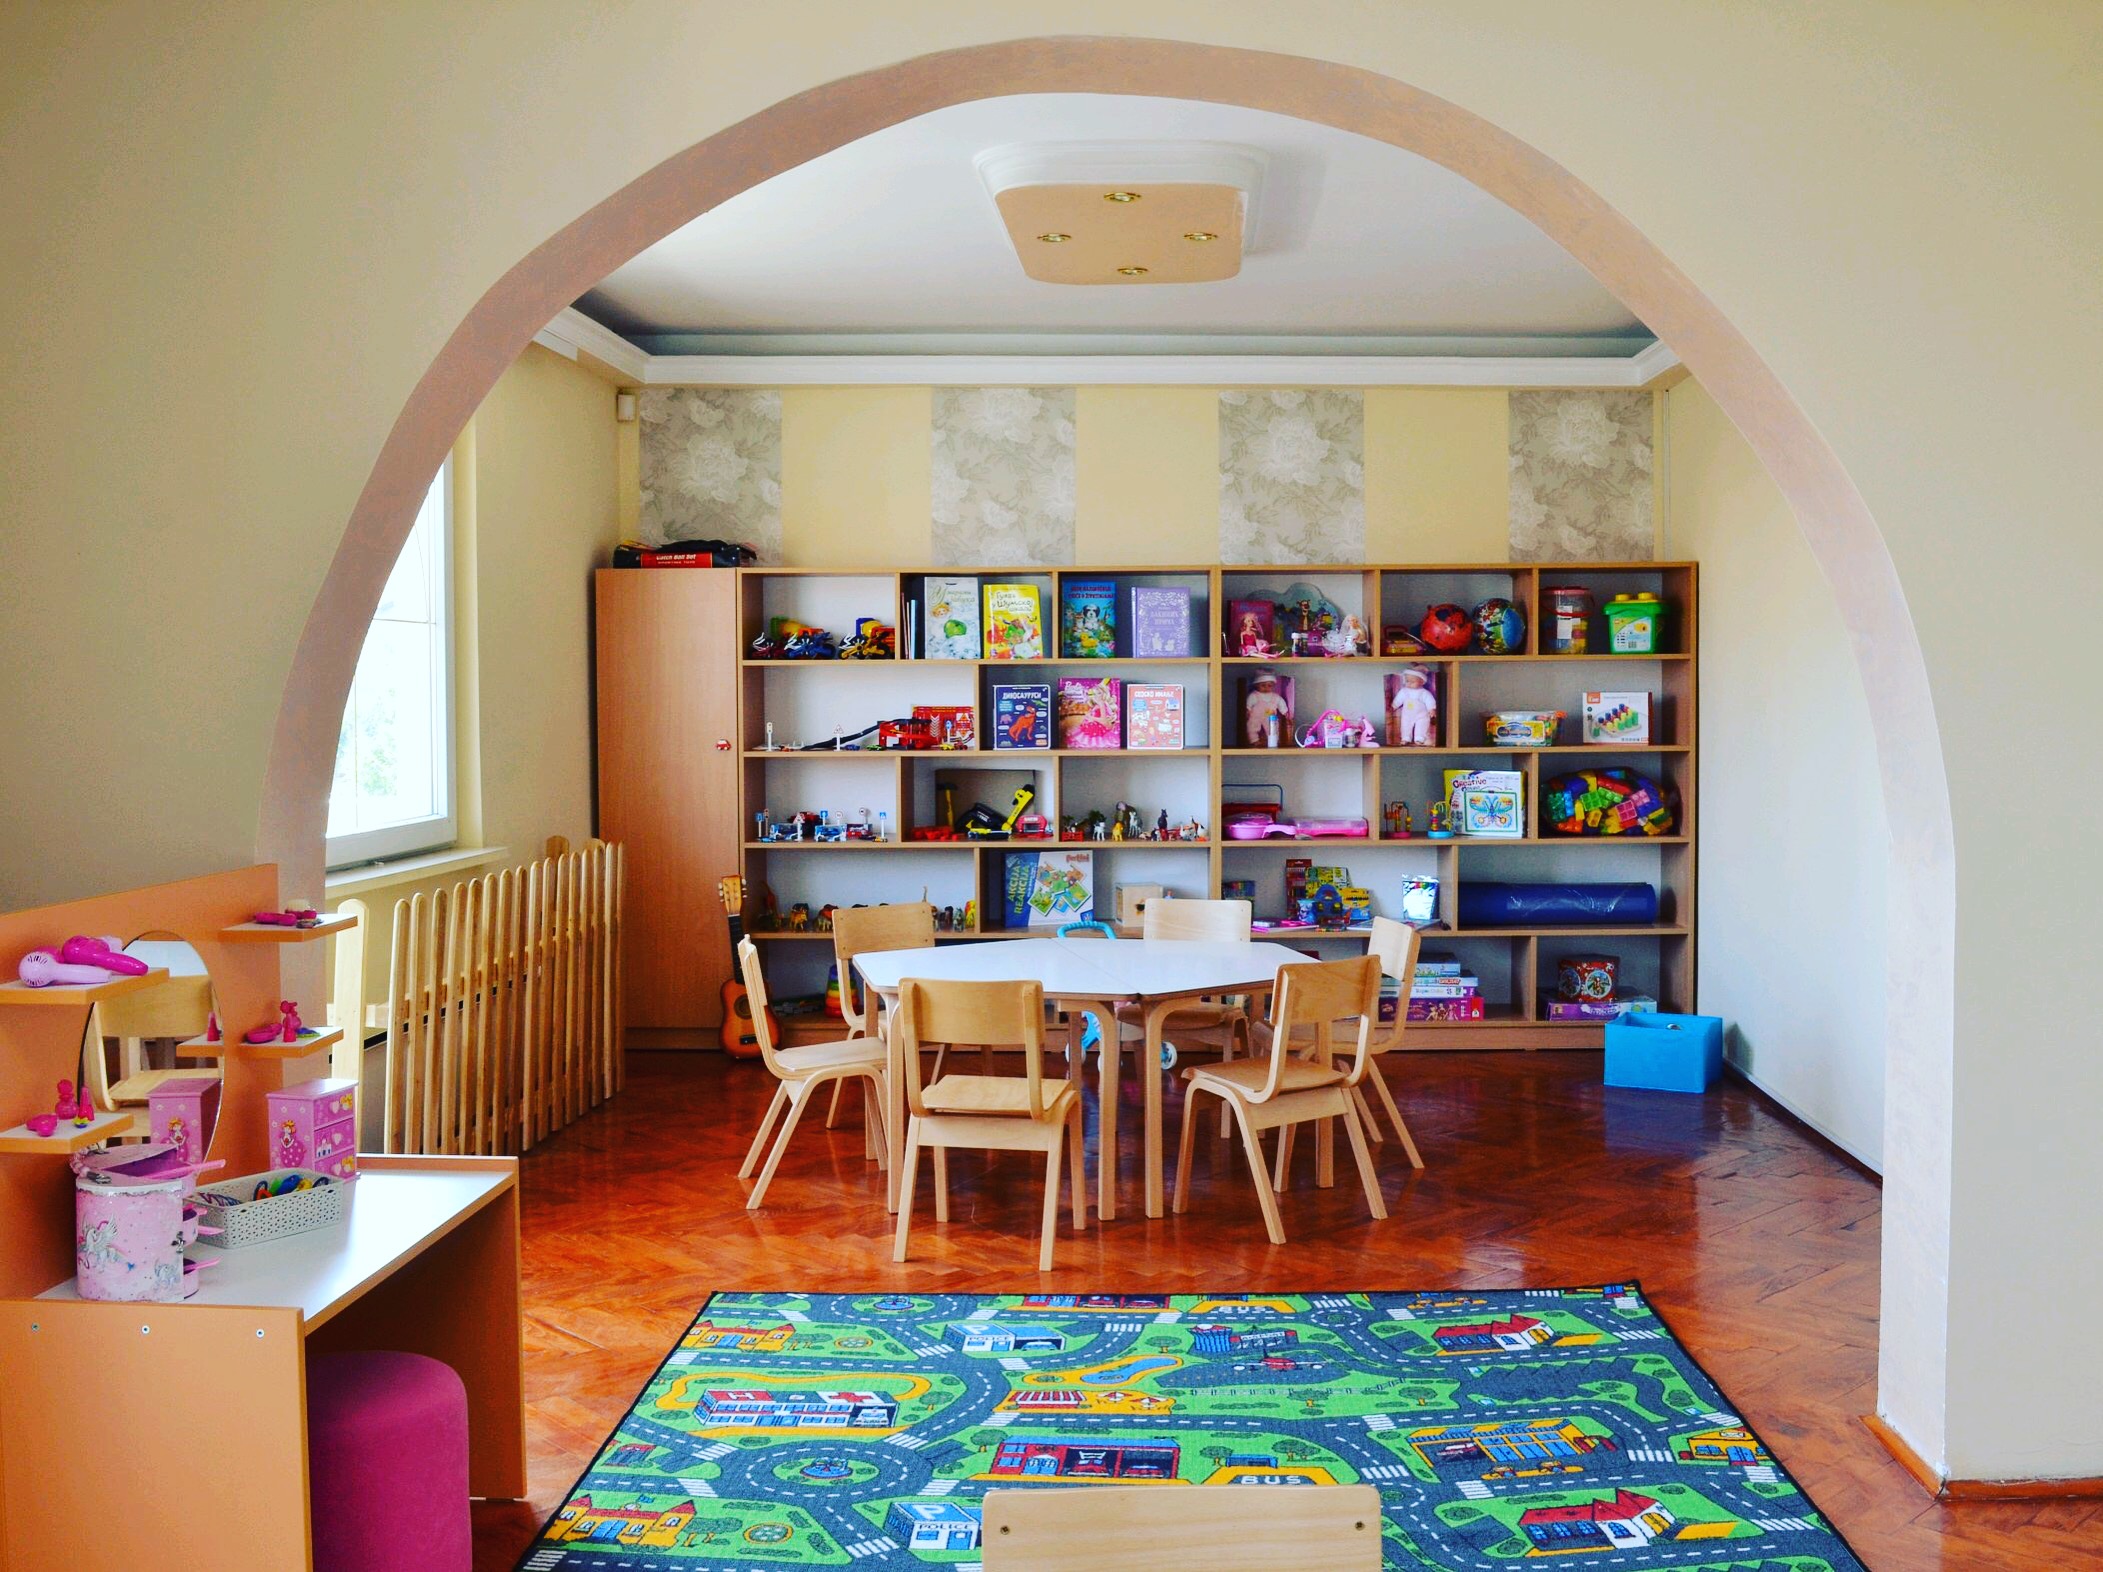 MASTALICA KINDERGARTEN Kindergartens Belgrade - Photo 3